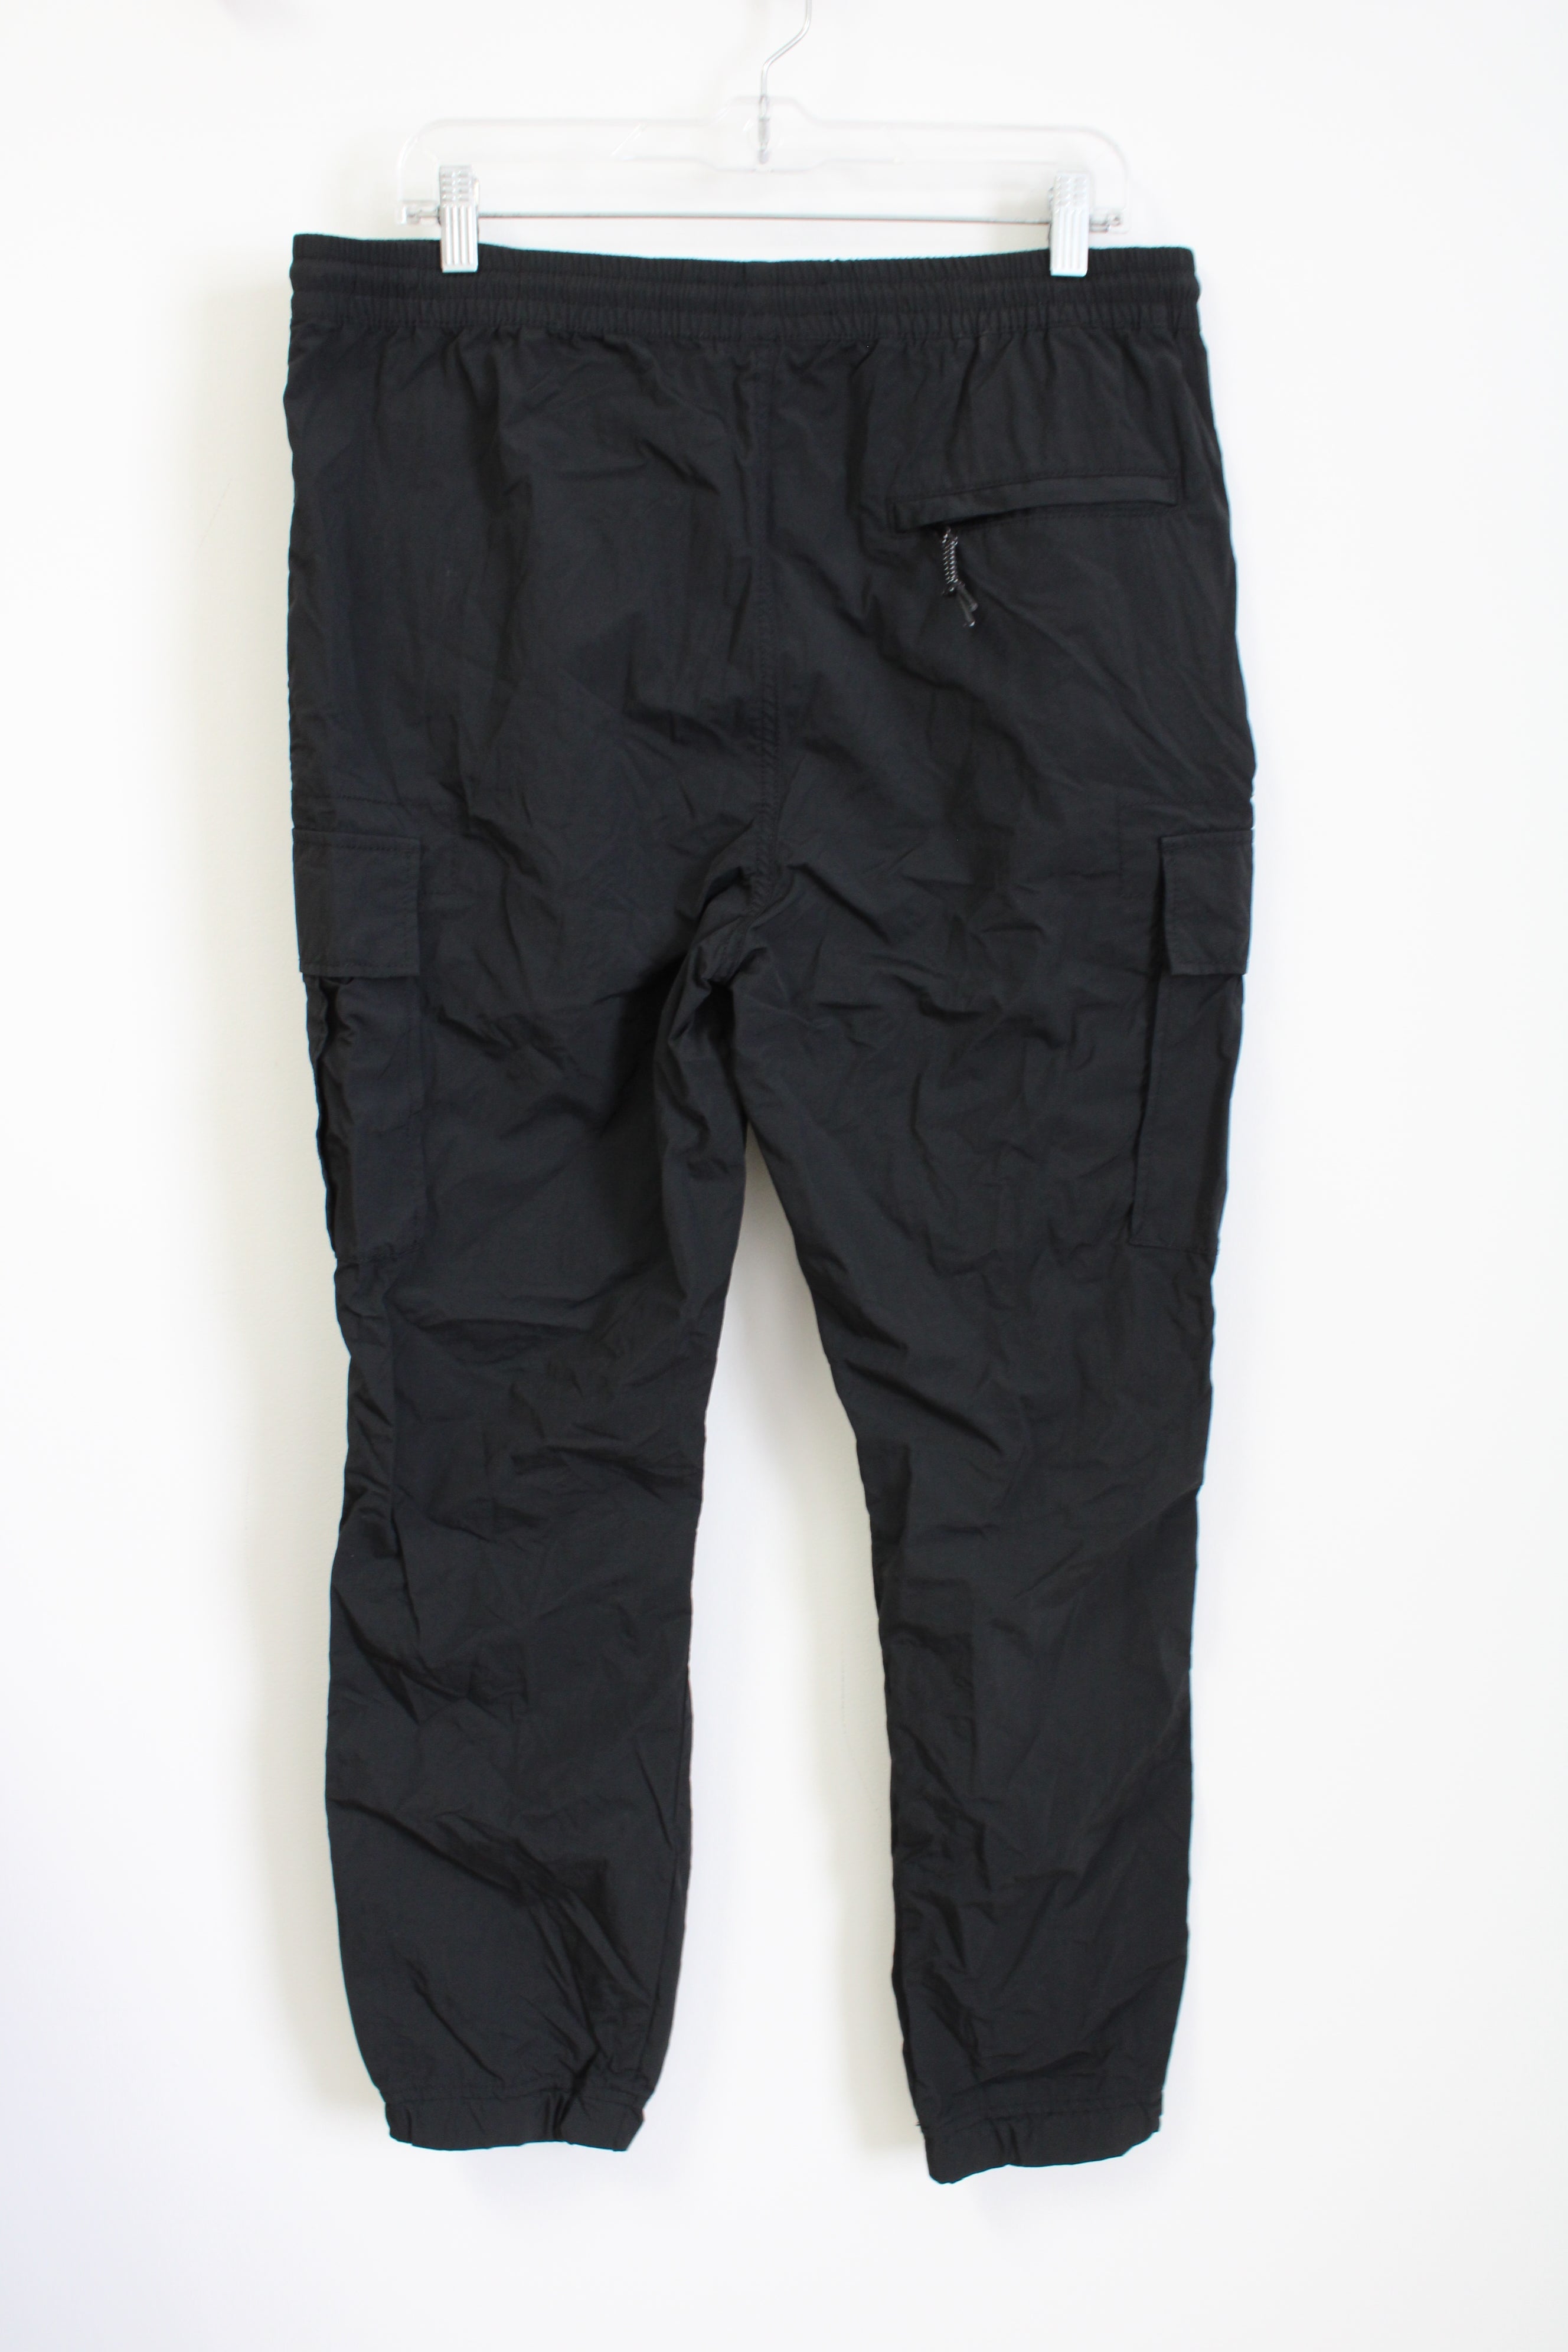 Aeropostale Black Nylon Jogger Pants | L